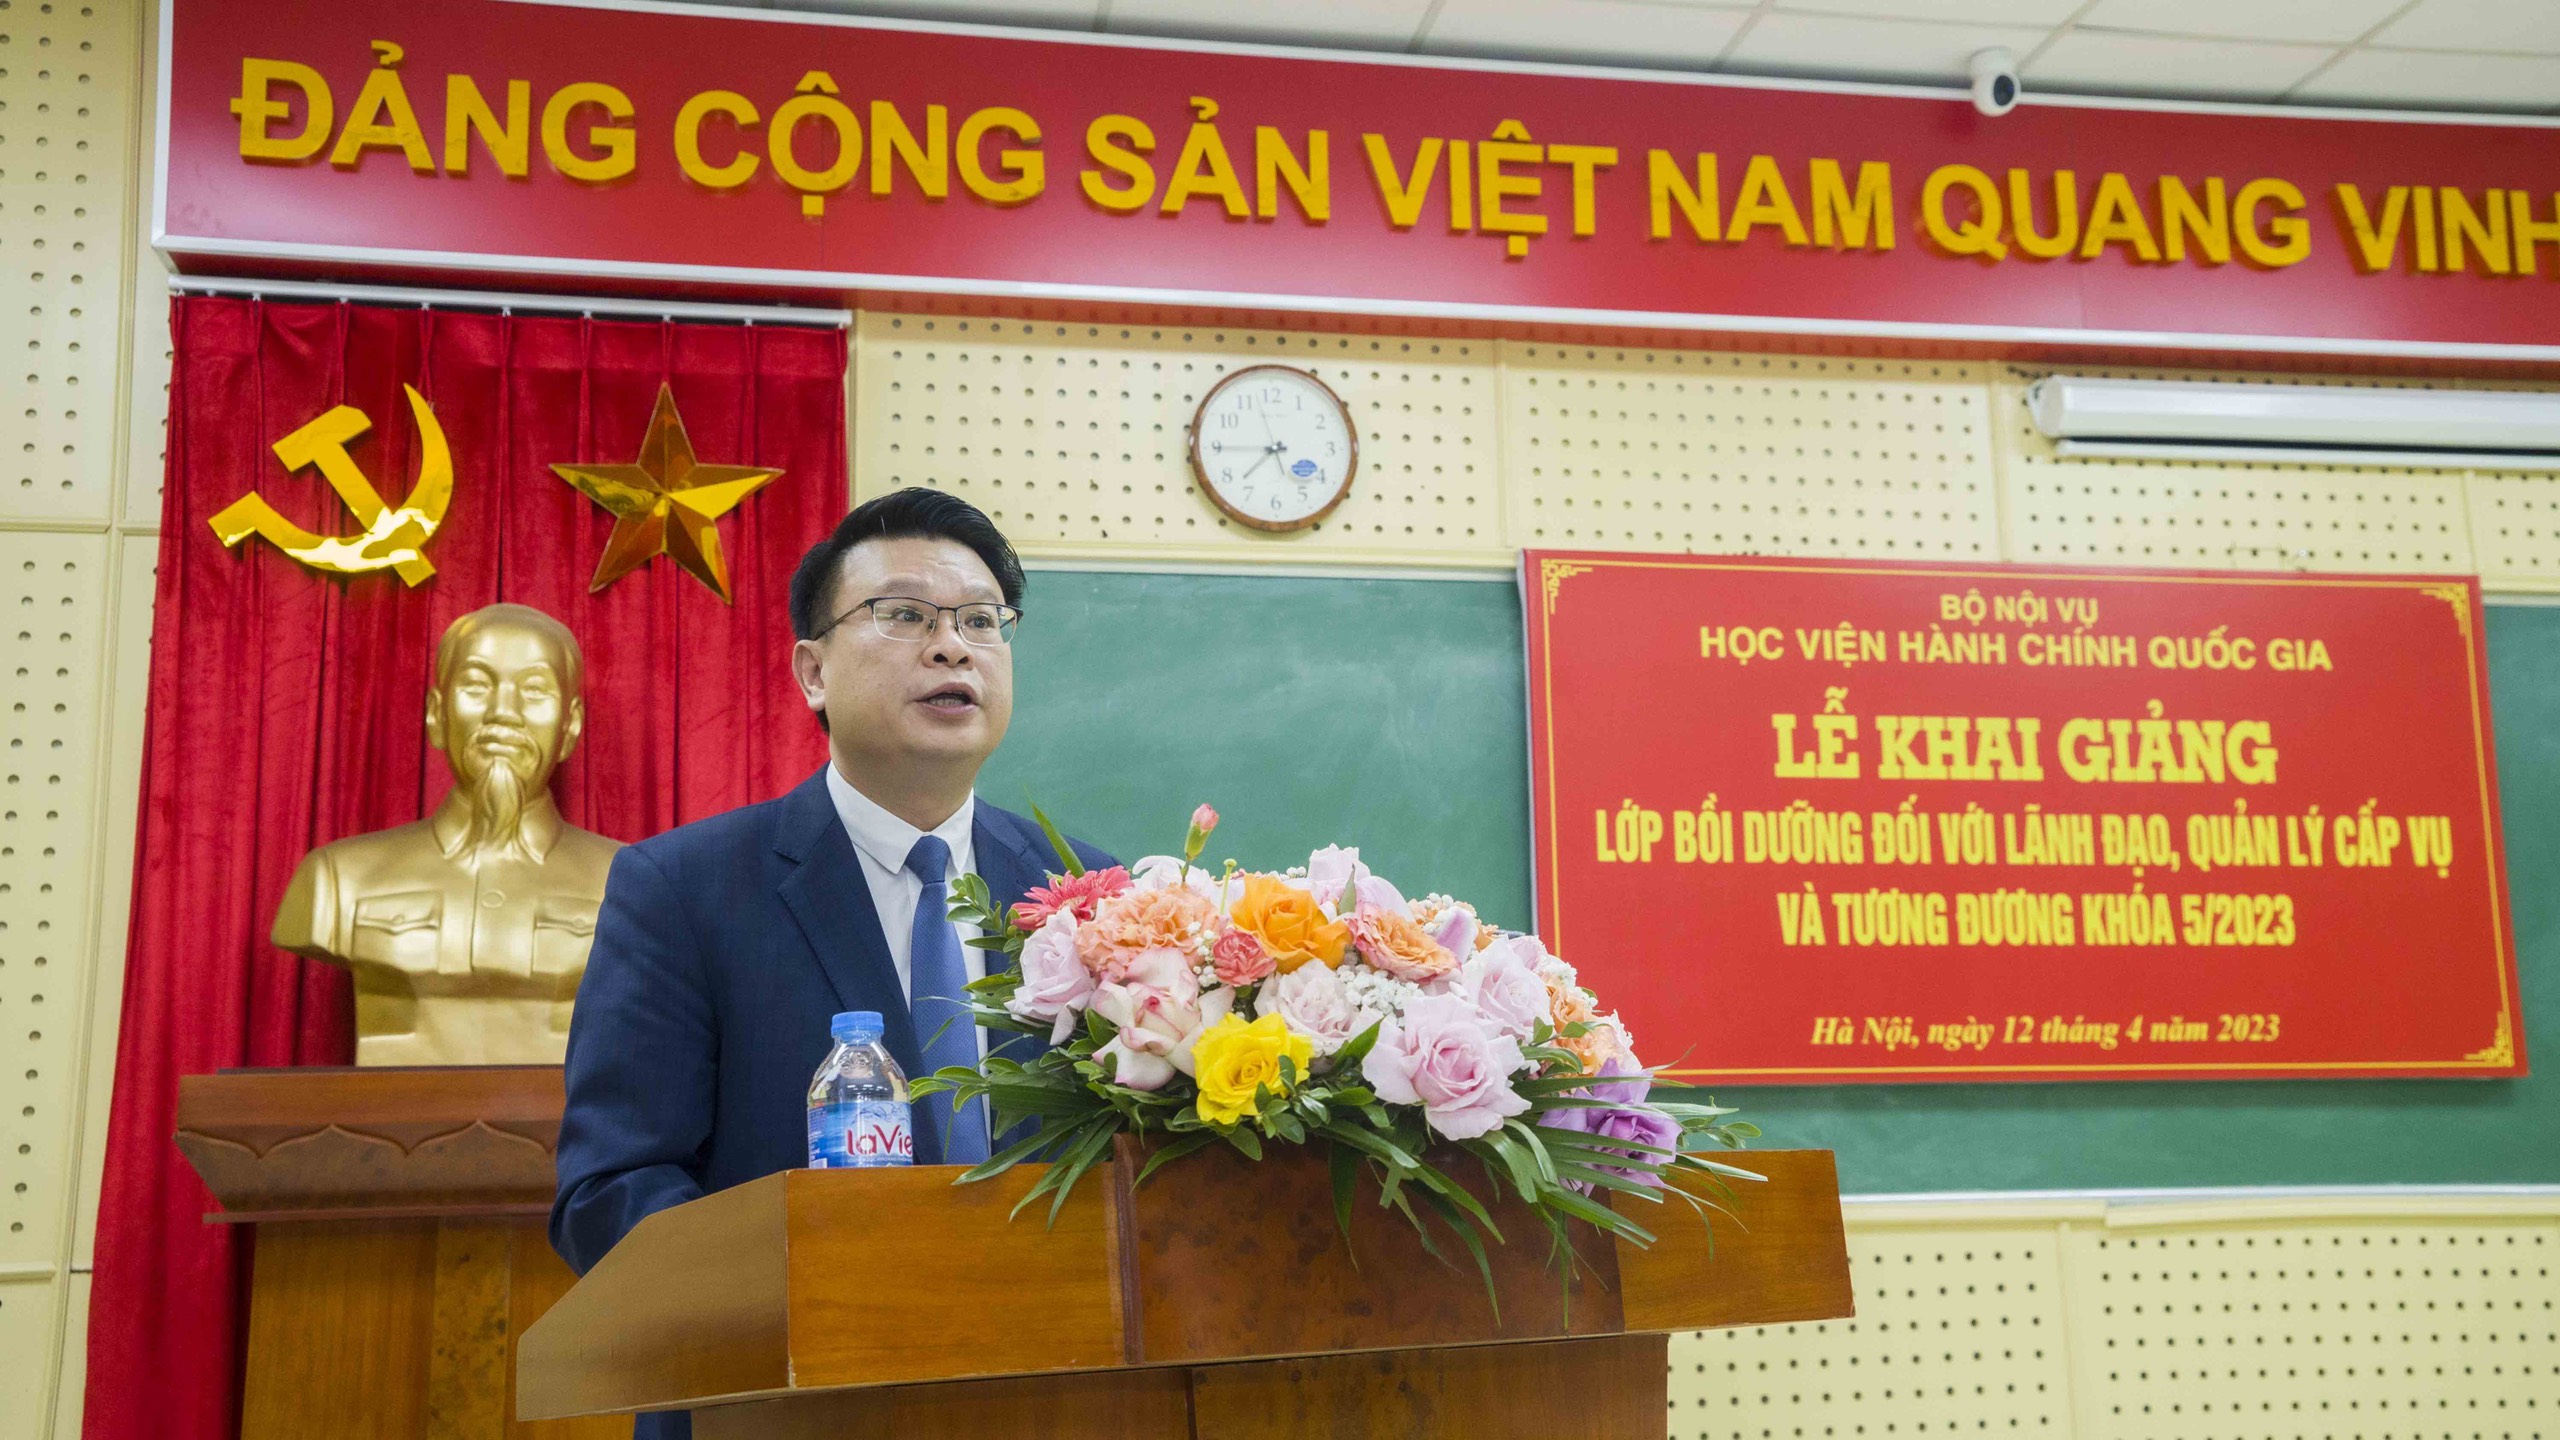 TS. Bùi Huy Tùng – Trưởng ban Quản lý bồi dưỡng công bố quyết định, gửi lời chào mừng đến các đồng chí lãnh đạo, đồng chí học viên